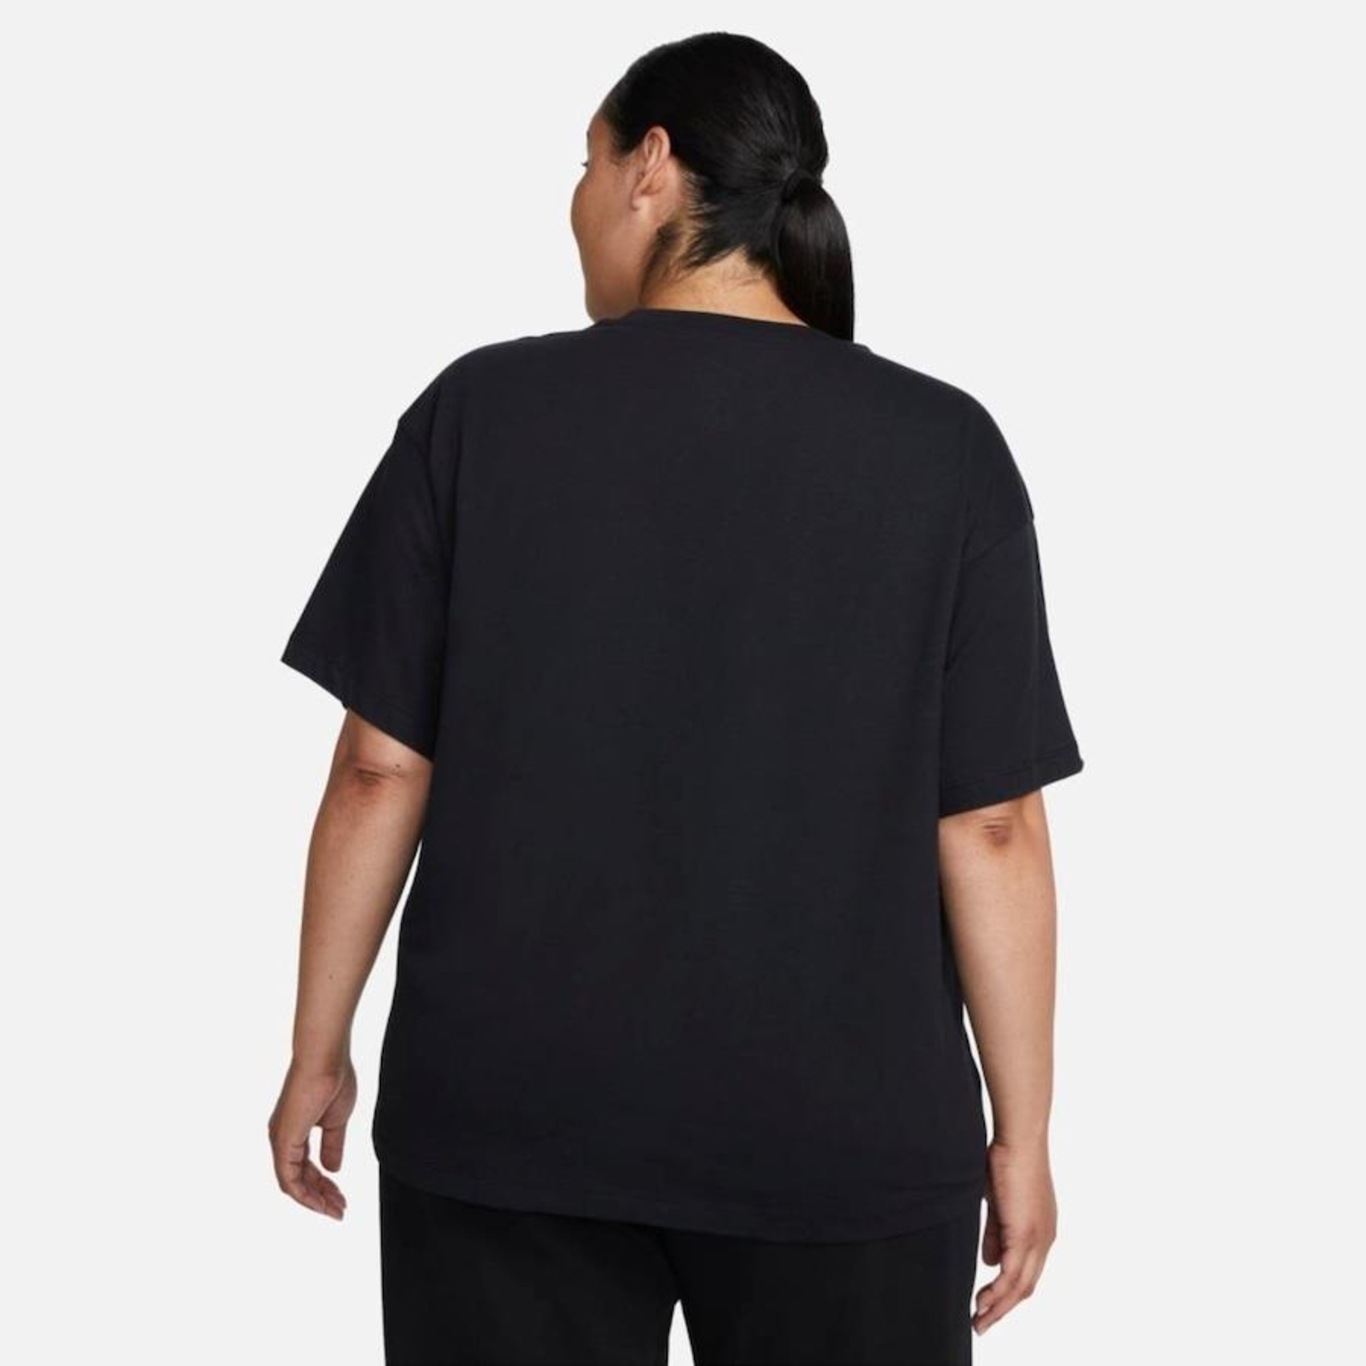 Camiseta Nike Sportswear Fiber Plus Size - Feminina